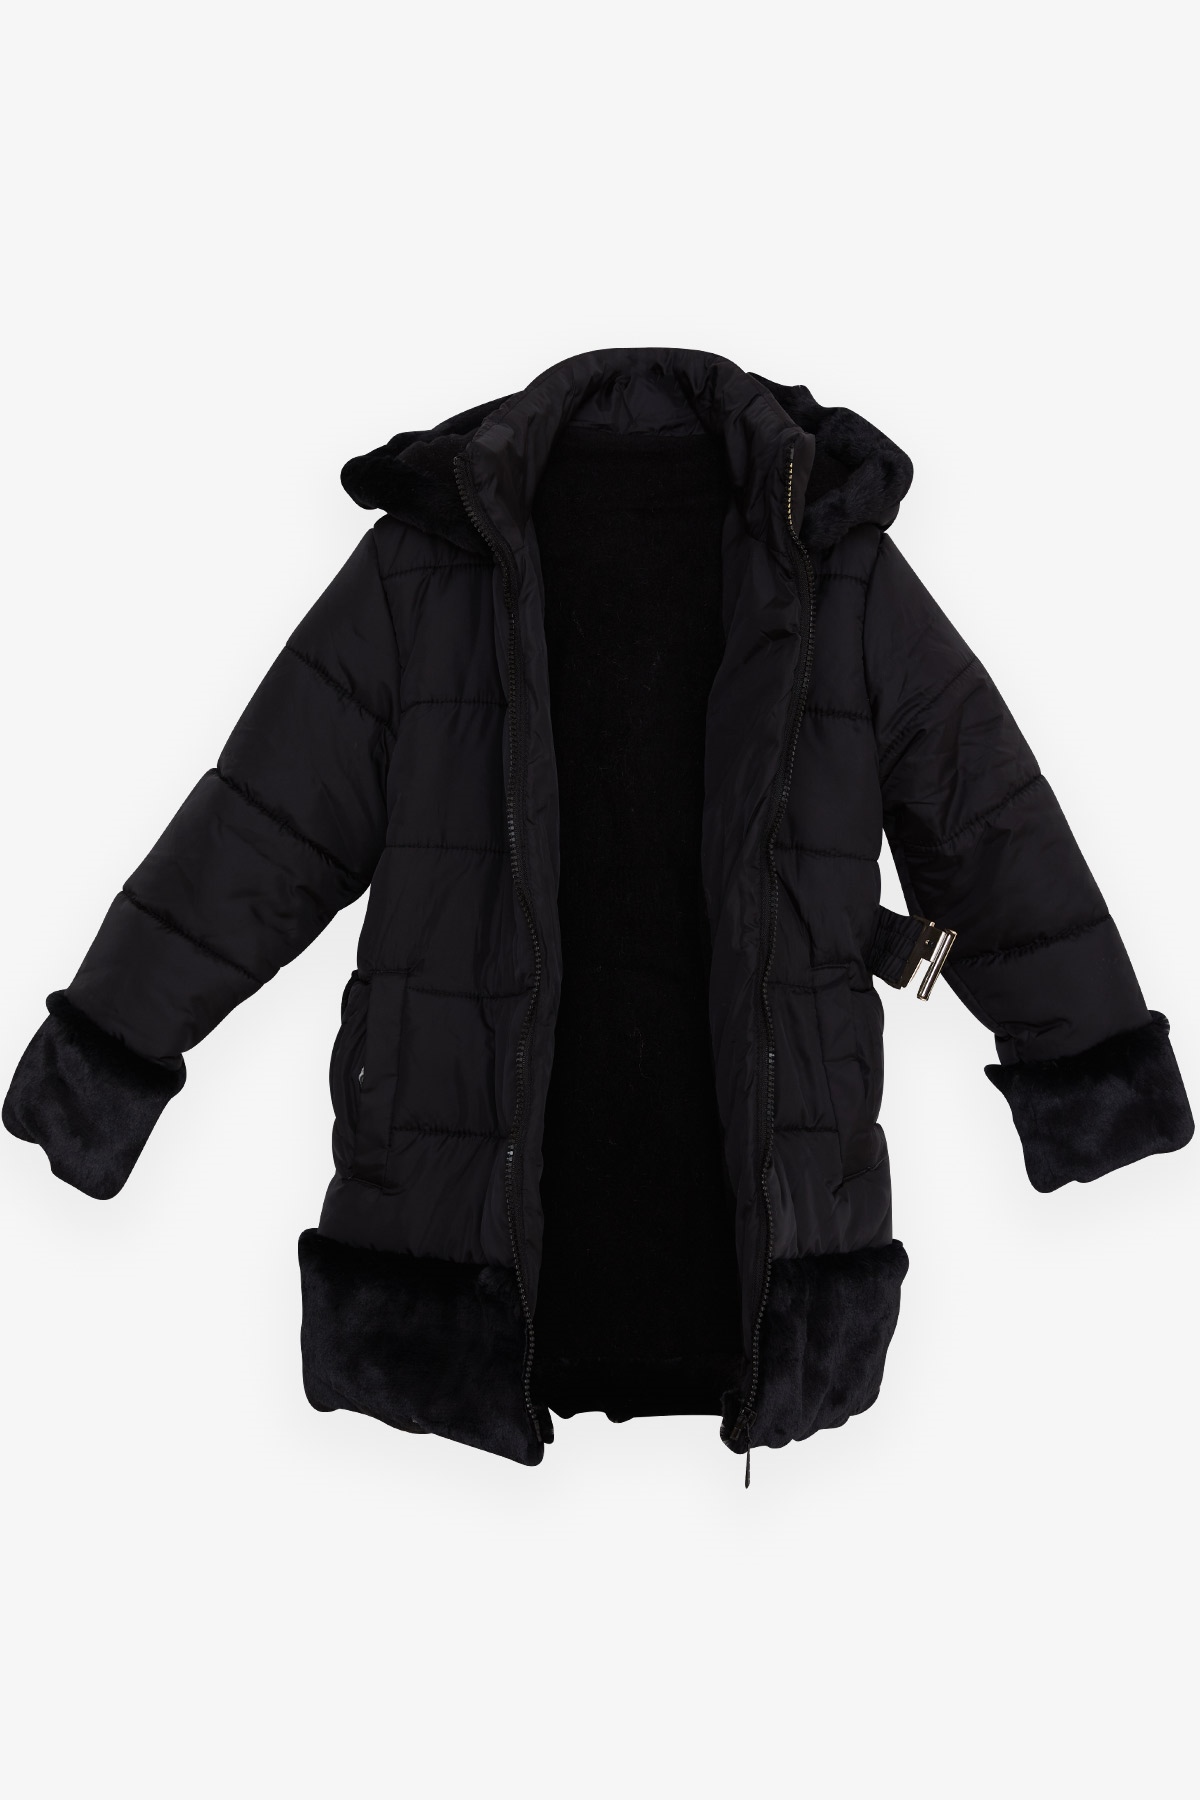 Kız Çocuk Mont Kürklü Kemer Detaylı Siyah 3 Yaş - Sıcacık Dış Giyim | Breeze